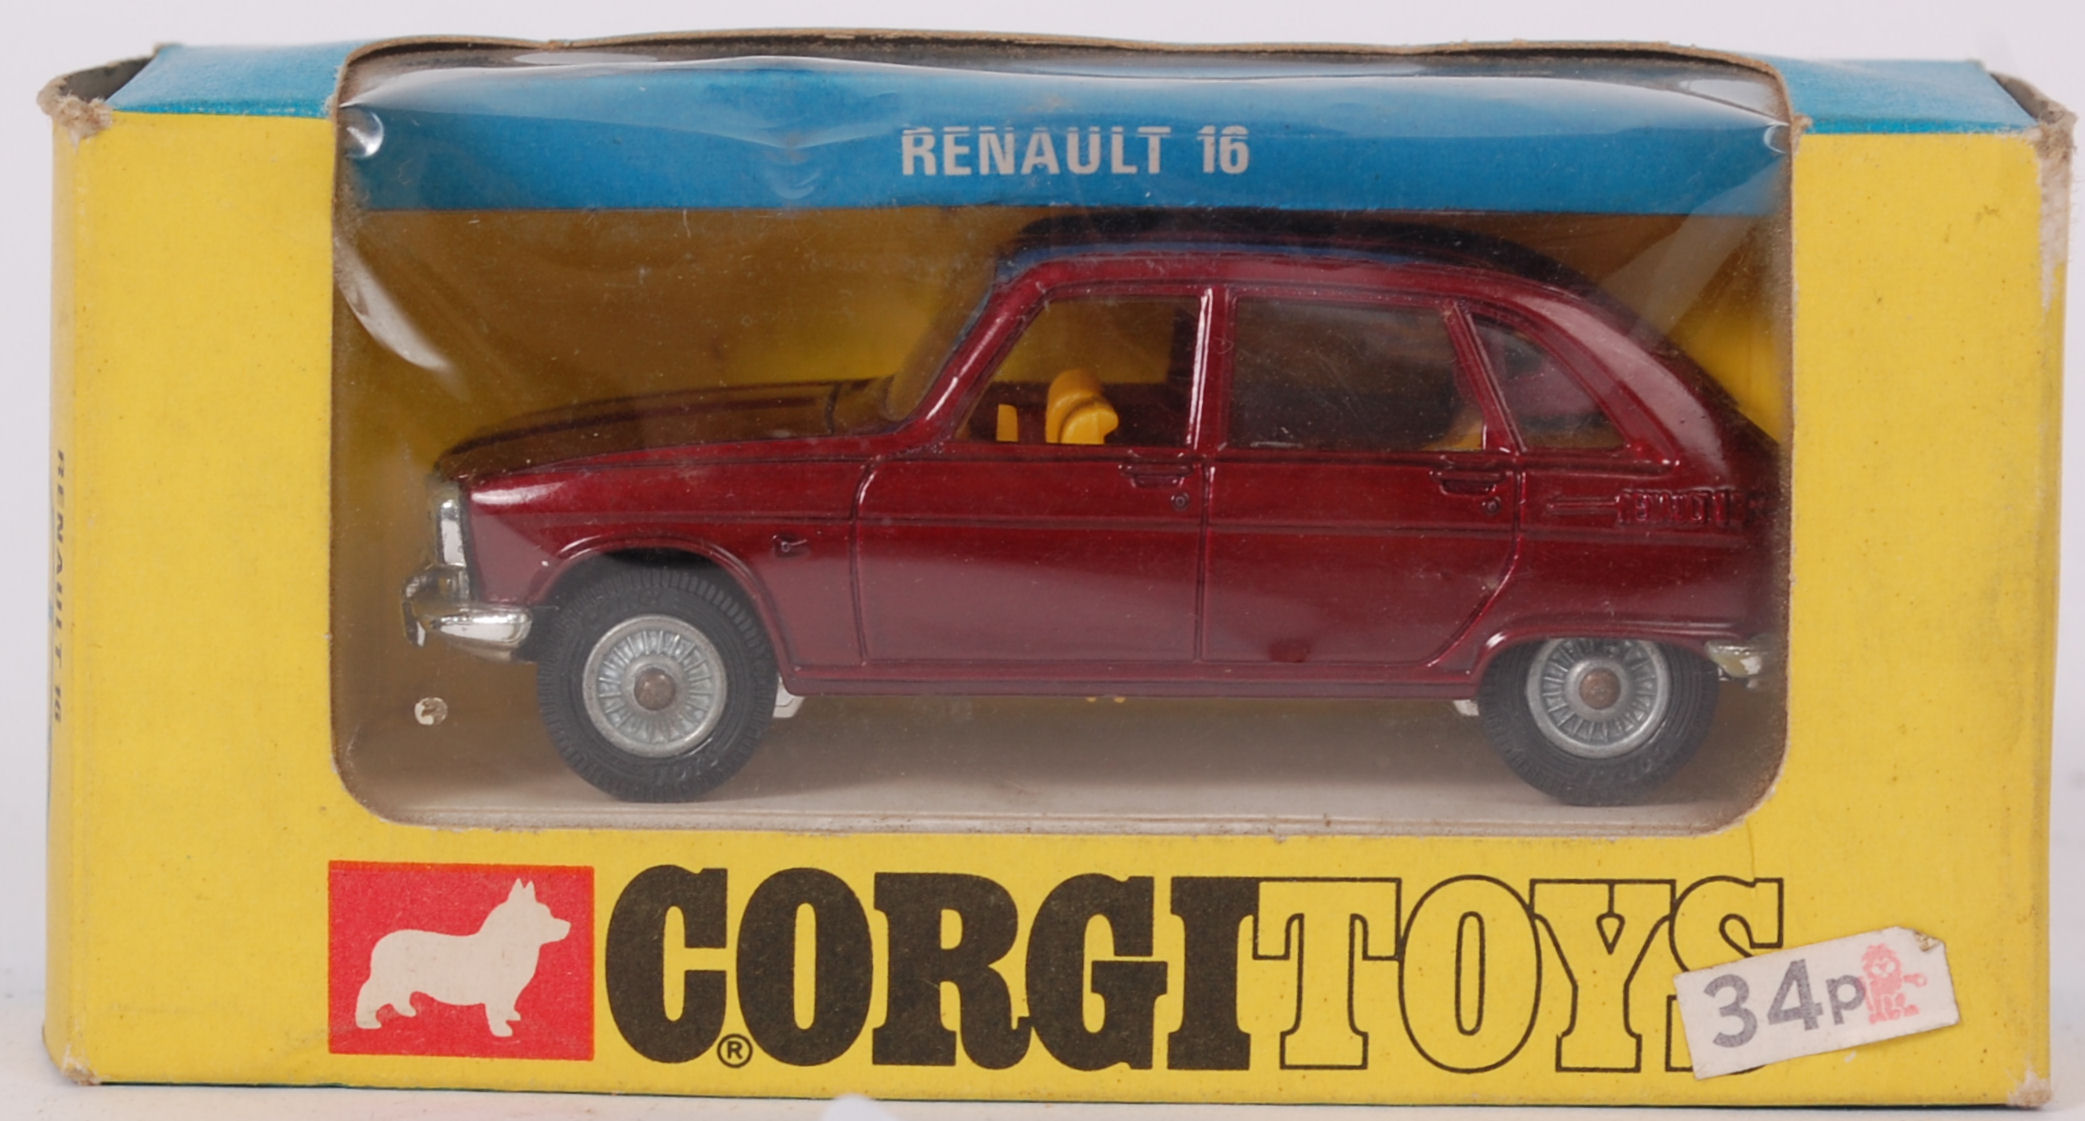 CORGI; An original Corgi diecast model R